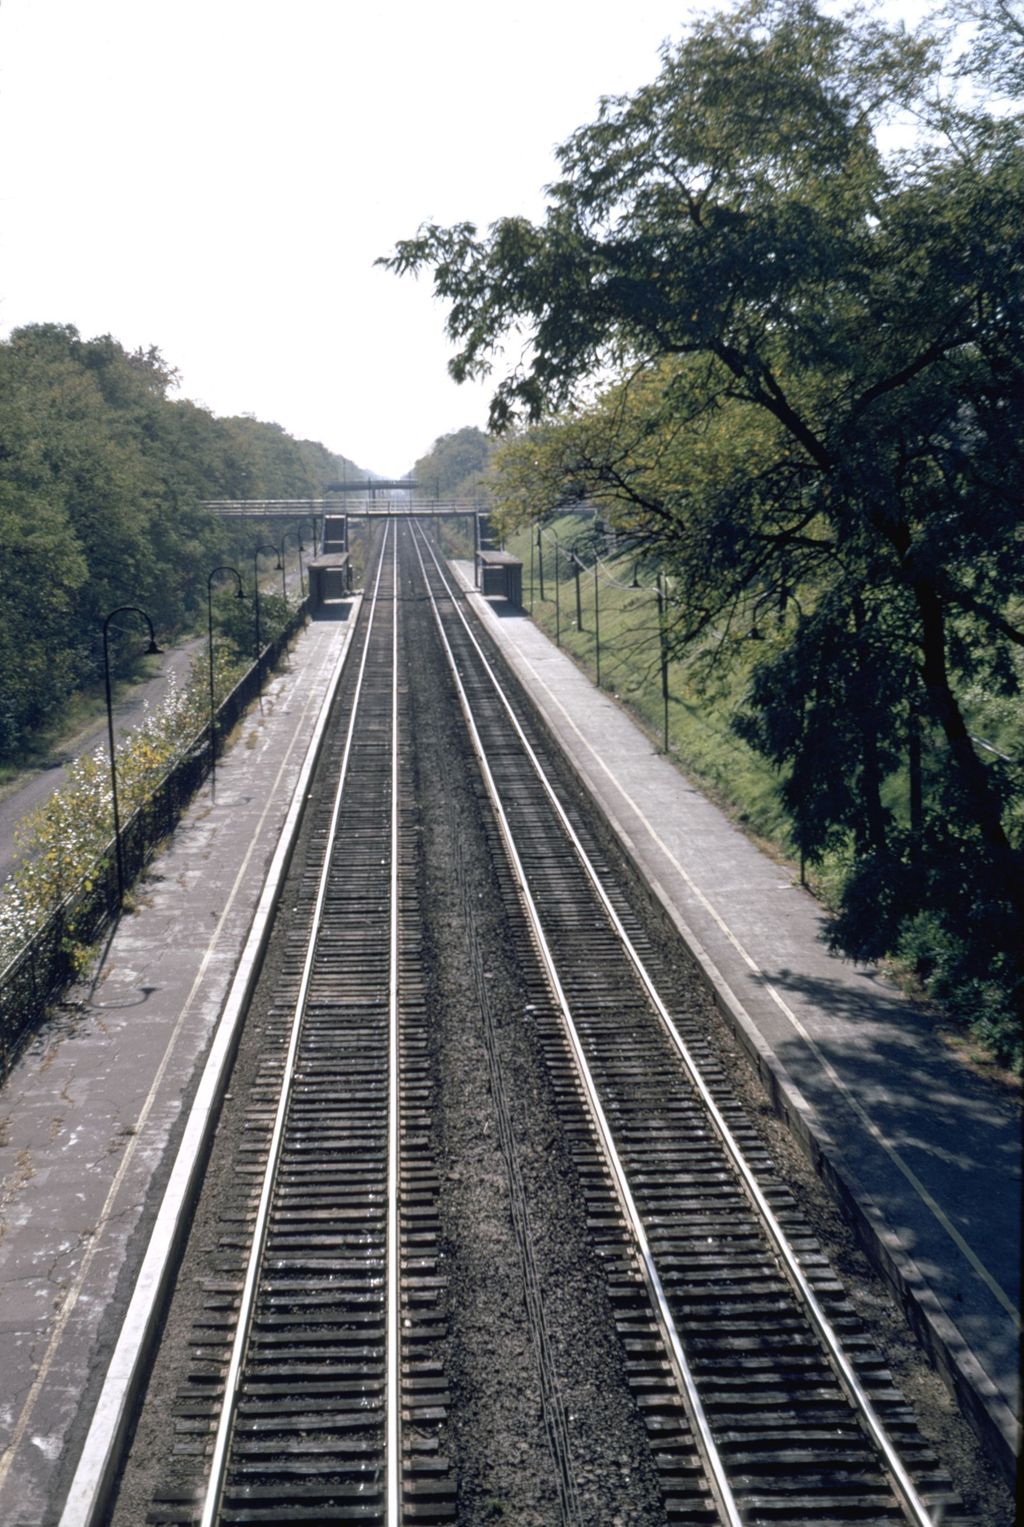 Railroad tracks near Hubbard Woods Station, Winnetka